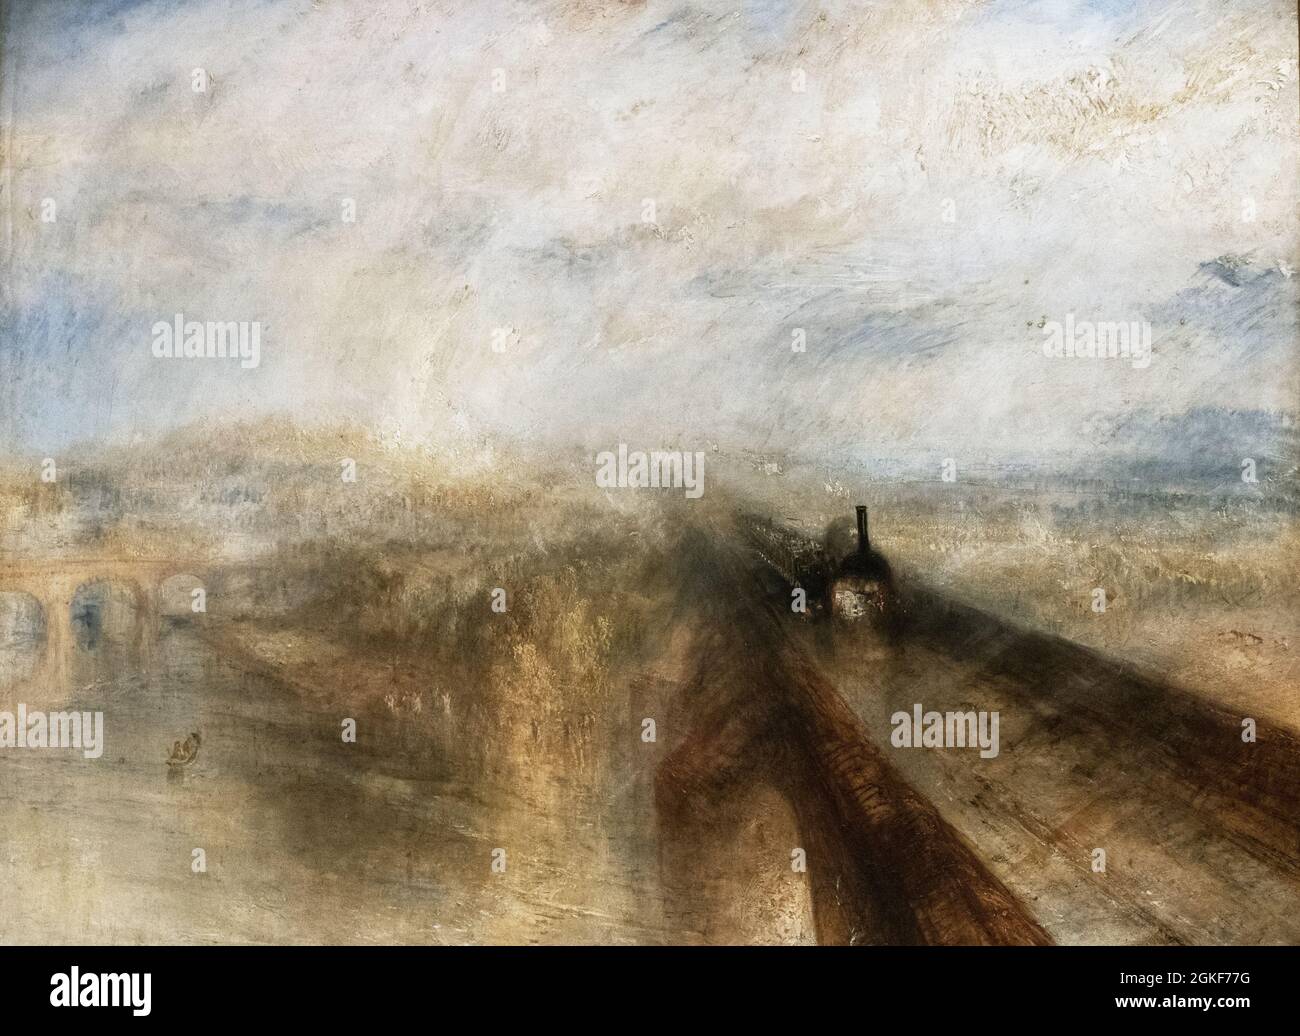 JMW Turner painting; 'Rain, Steam and Speed, the Great Western Railway' 1844; british Romantic art, 19th century. Stock Photo